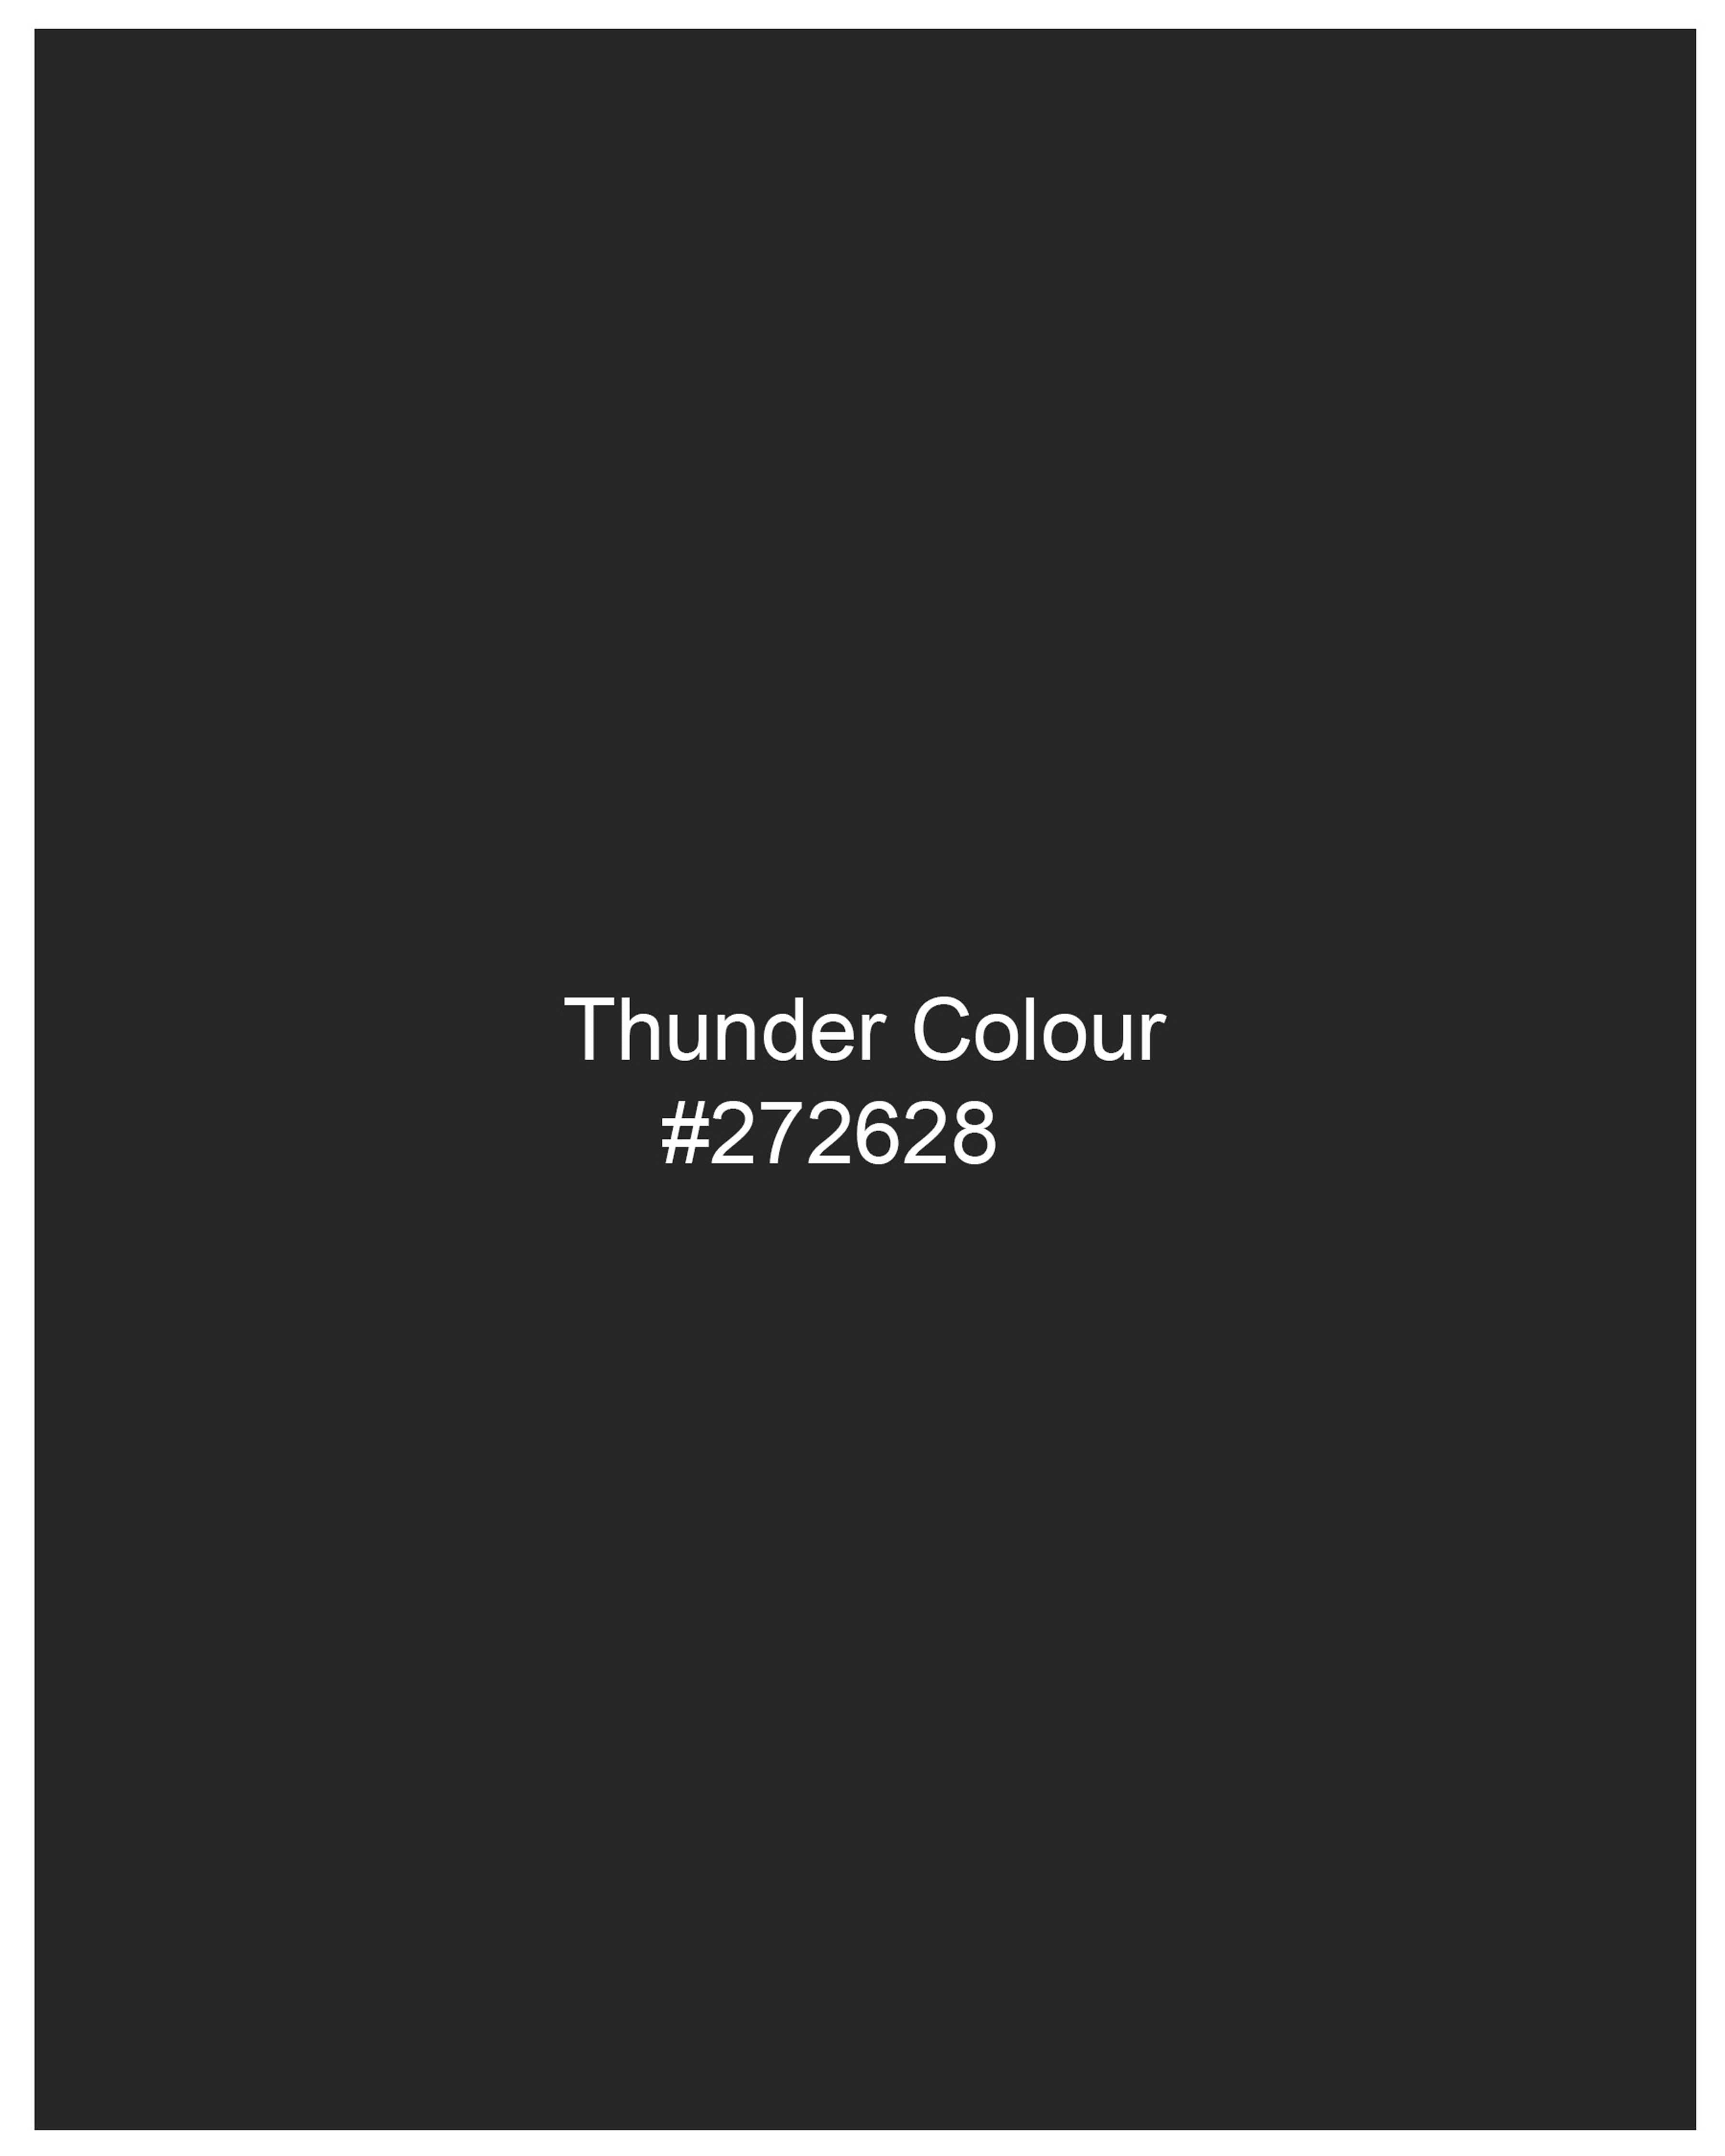 Thunder Black Plaid Waistcoat V2050-36, V2050-38, V2050-40, V2050-42, V2050-44, V2050-46, V2050-48, V2050-50, V2050-52, V2050-54, V2050-56, V2050-58, V2050-60